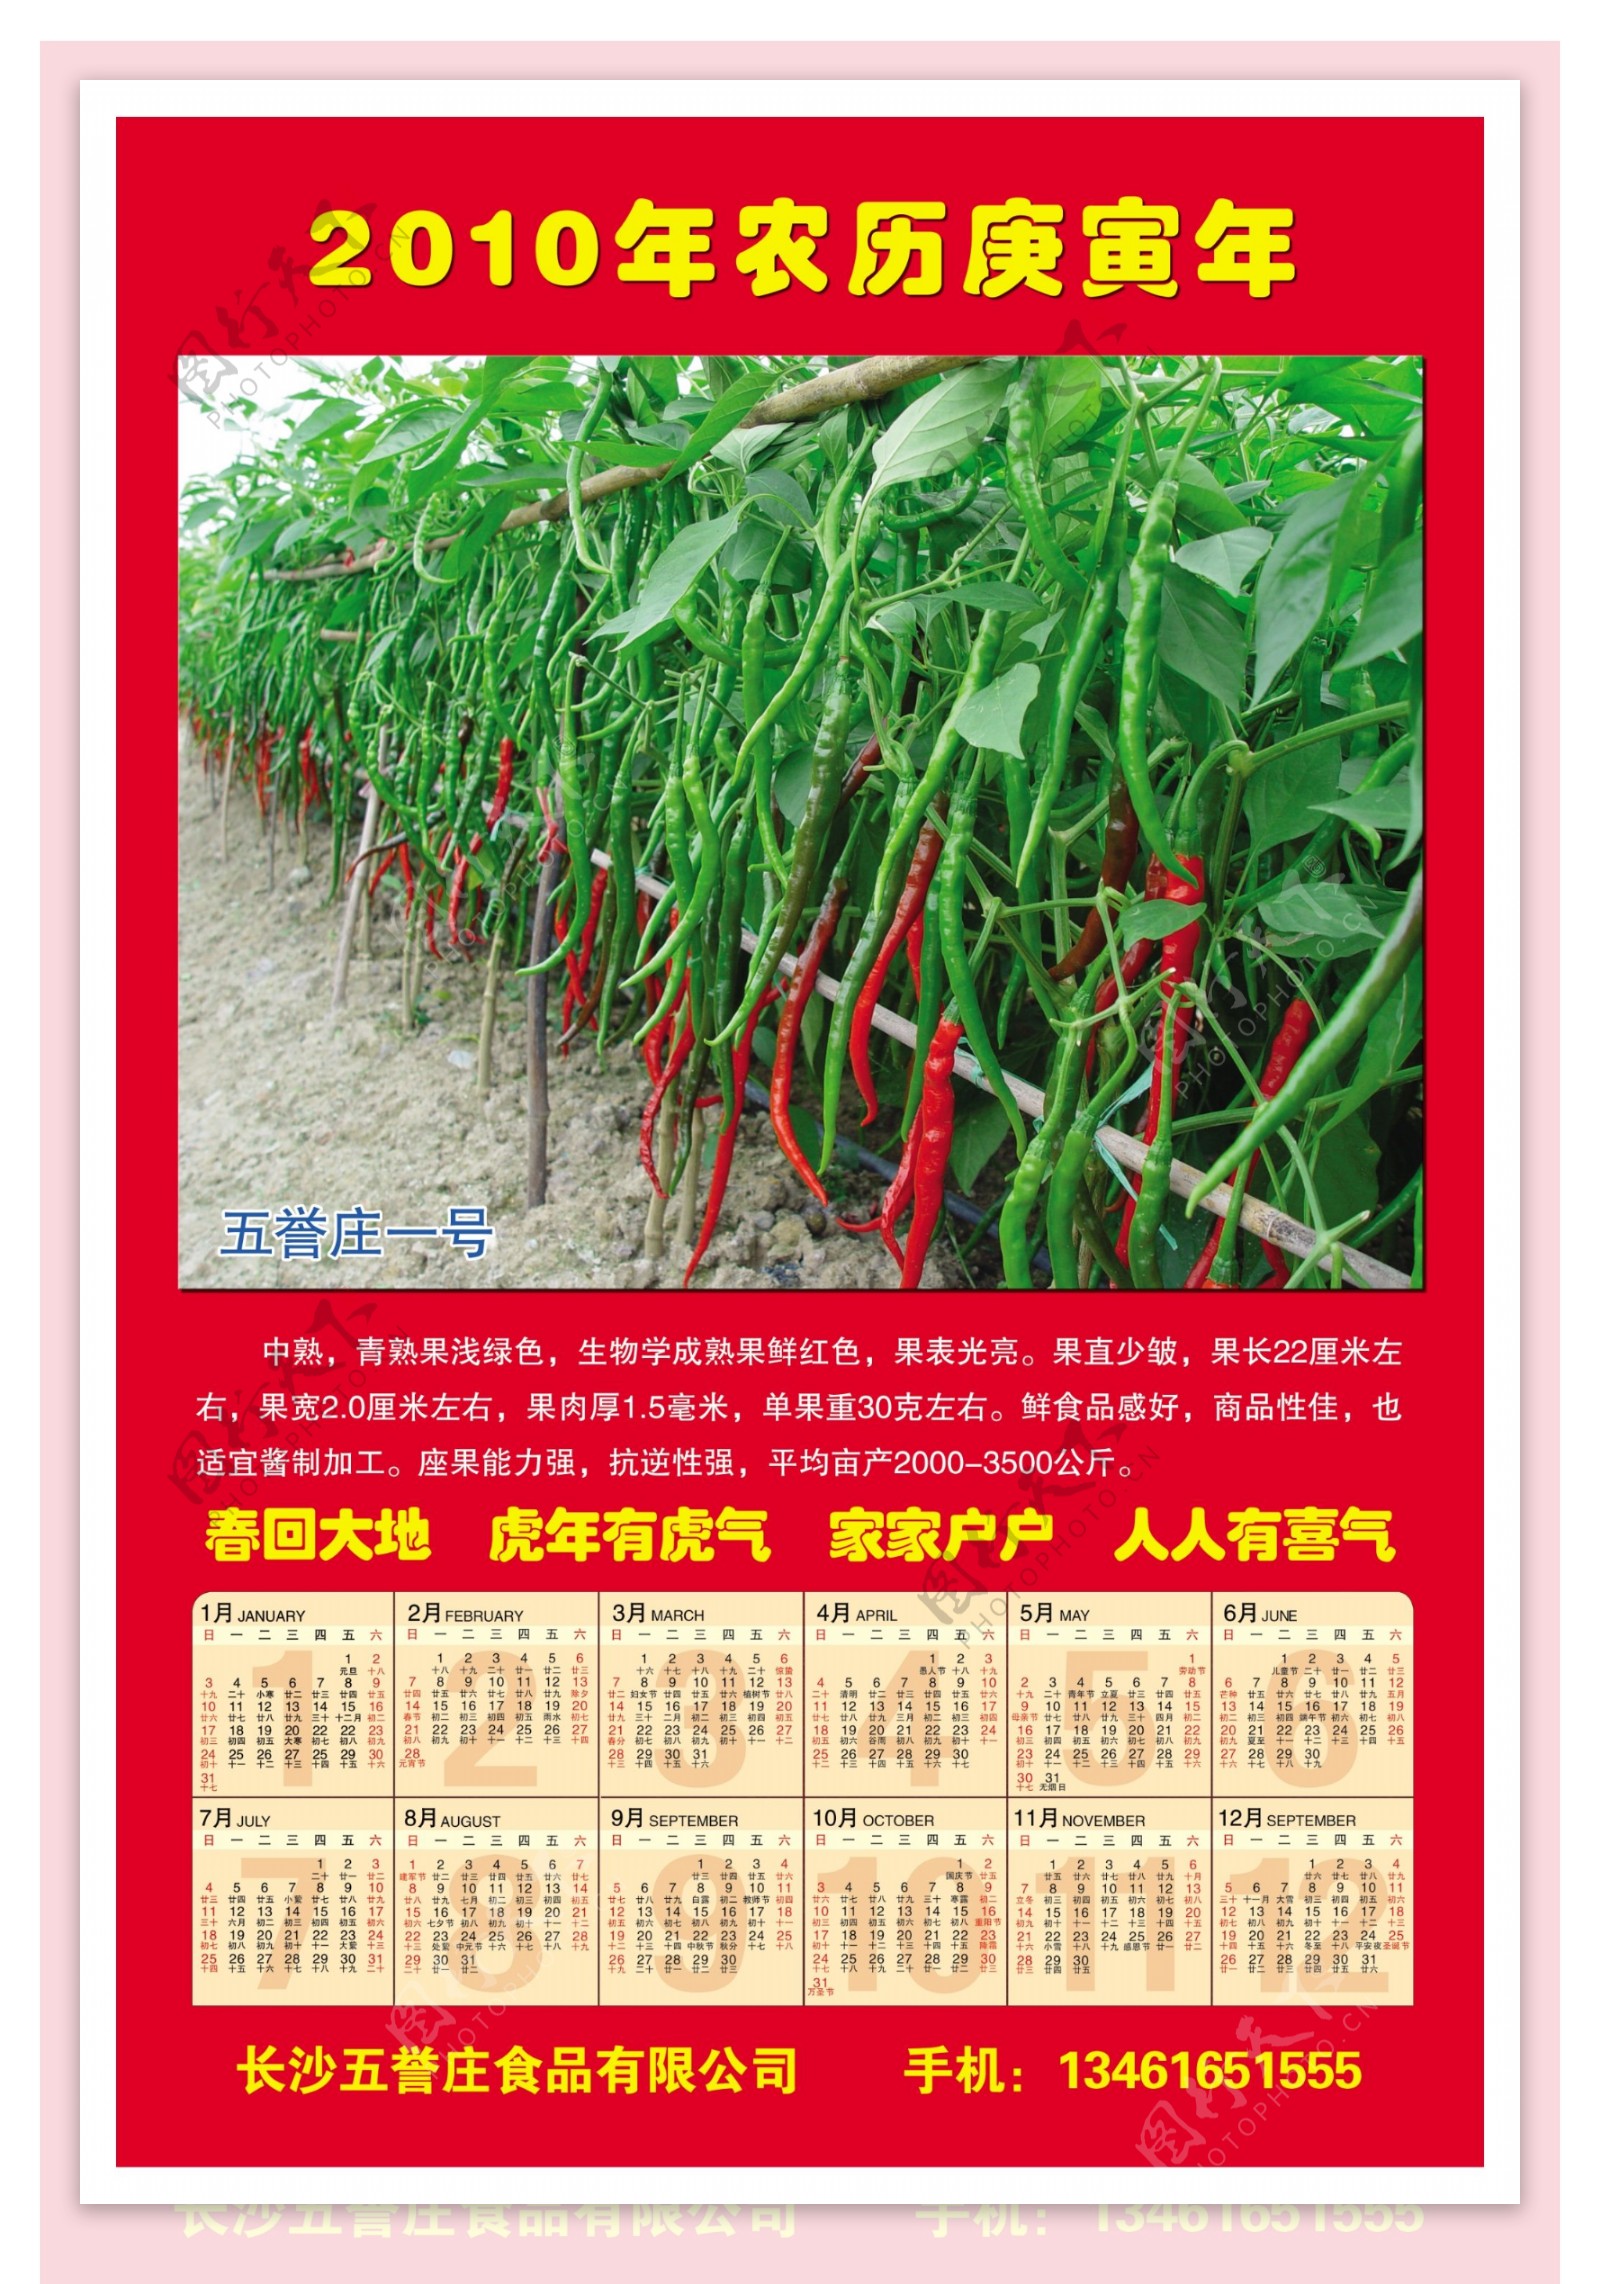 辣椒种植日历图片